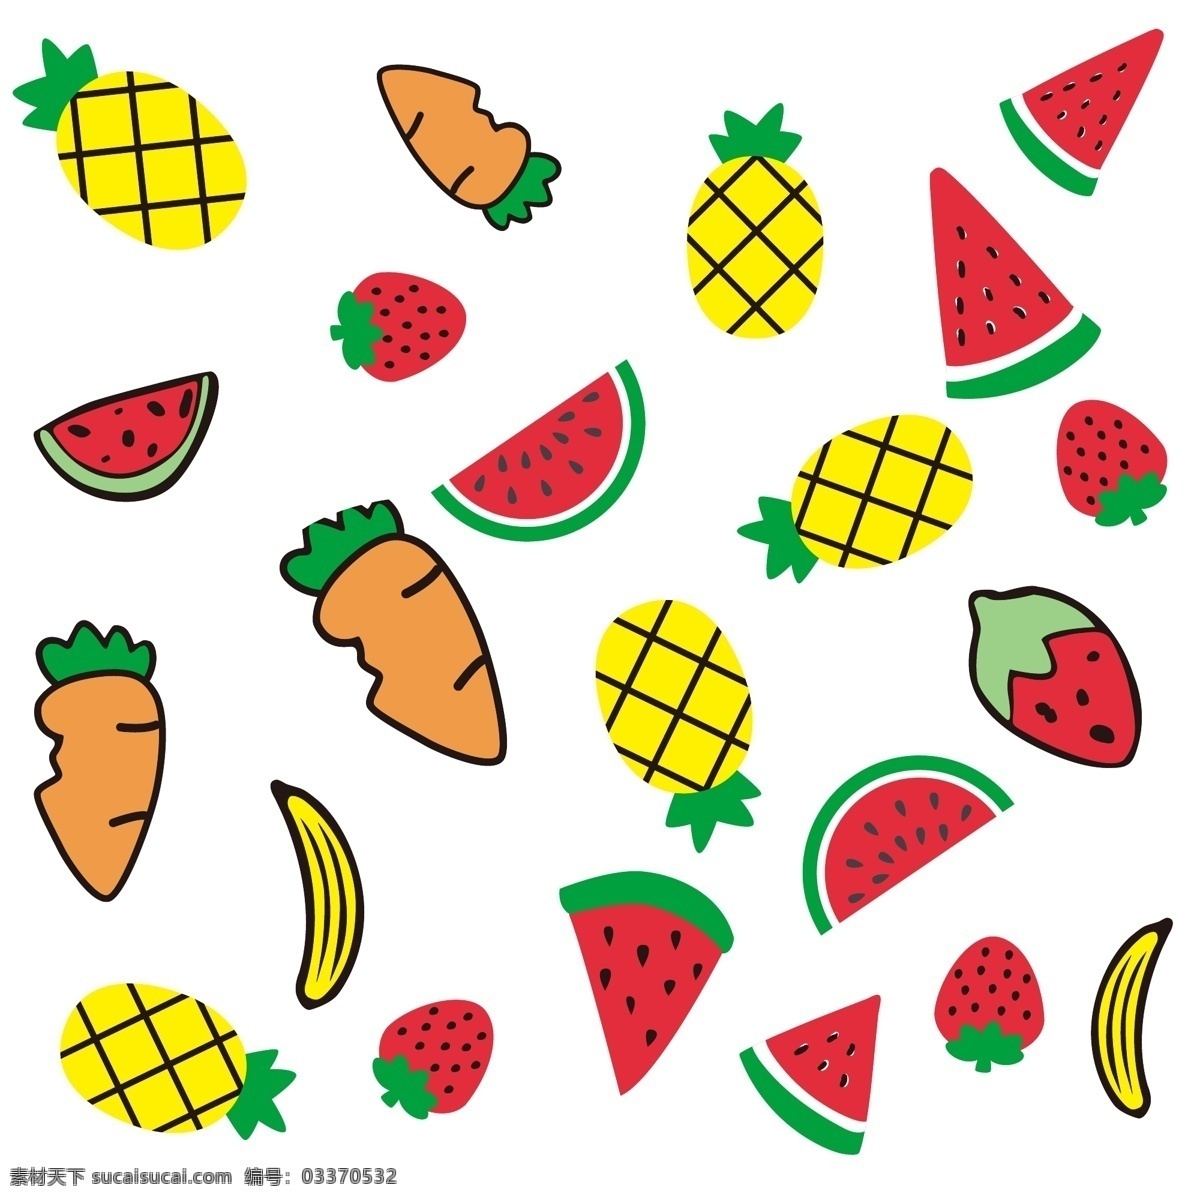 夏天 卡通 可爱 水果 矢量 食物 装饰 草莓 菠萝 香蕉 西瓜 胡萝卜 手绘 免扣 色彩 鲜艳